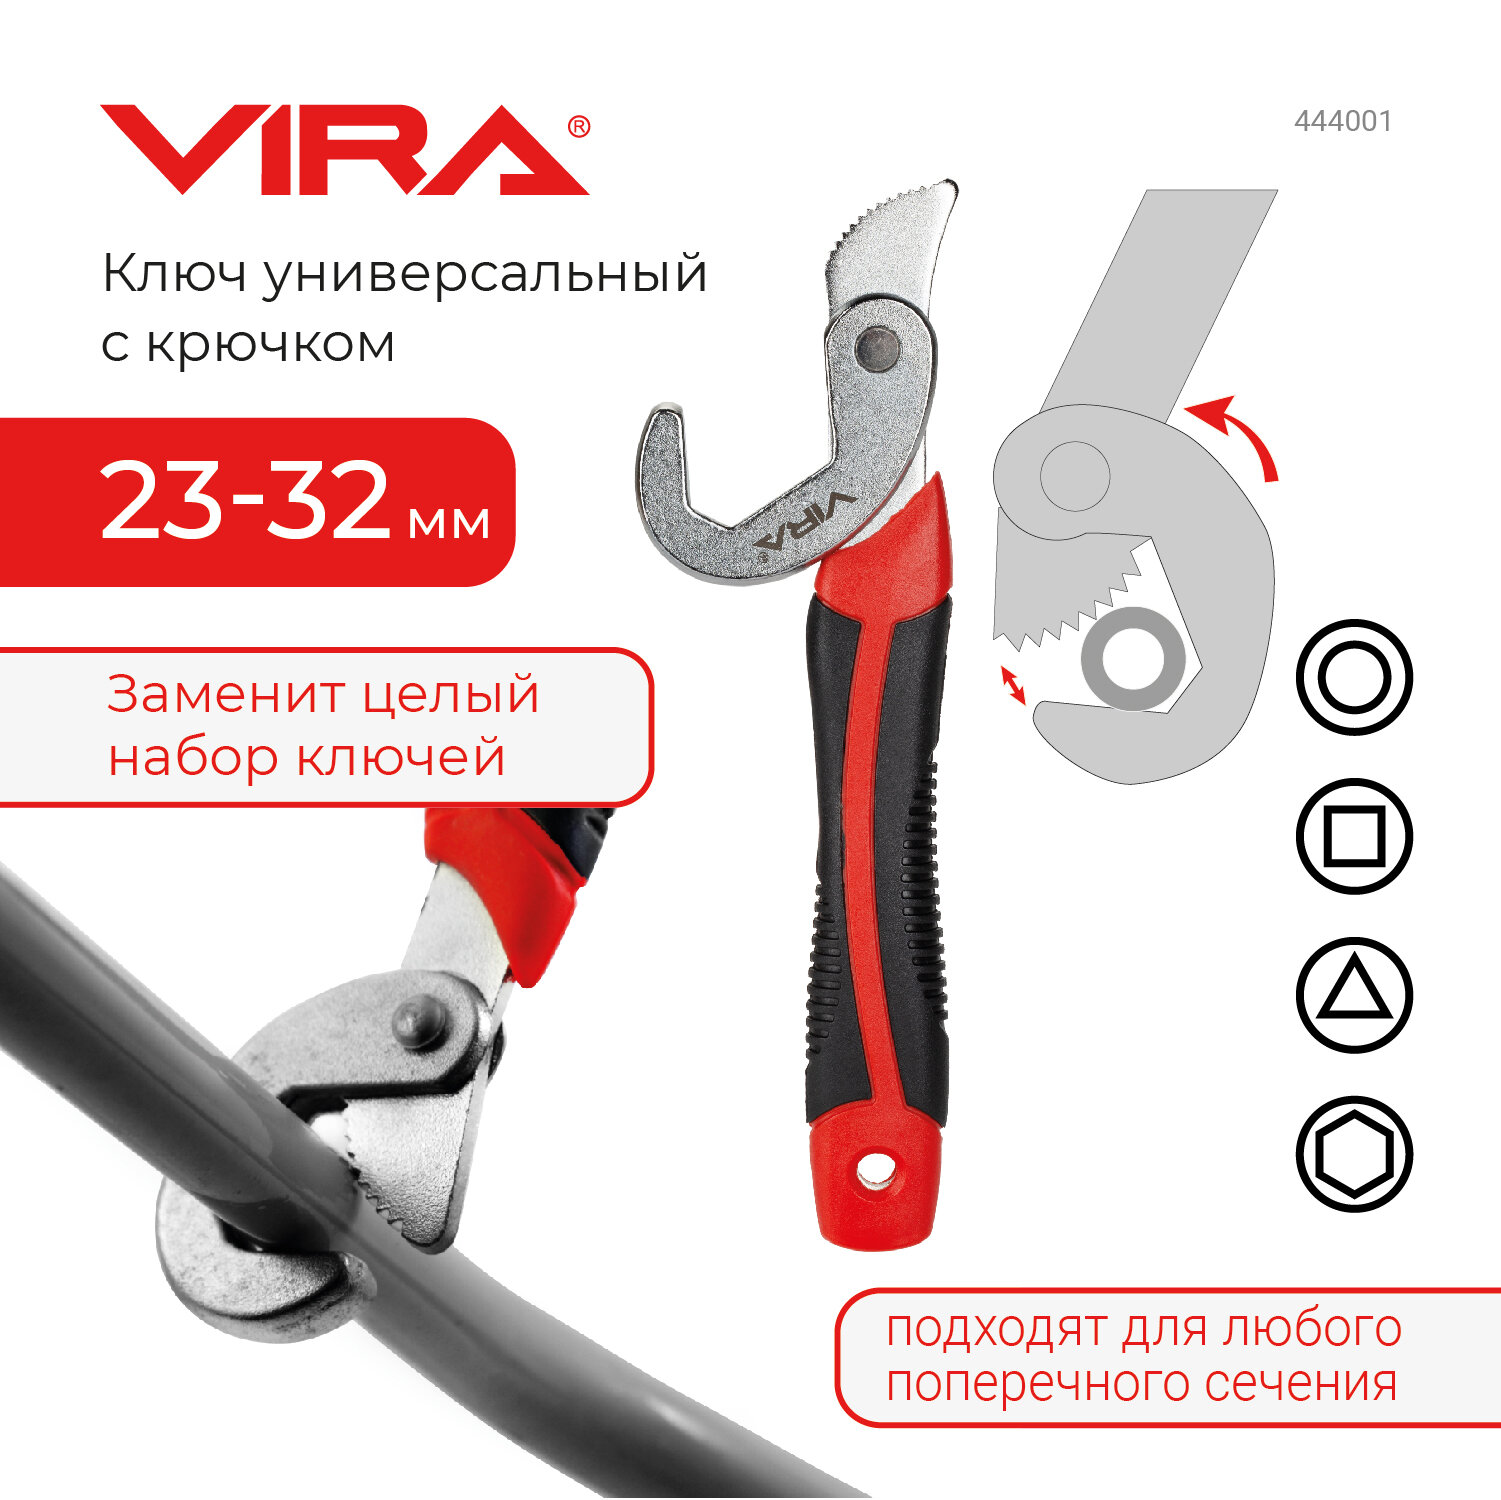 VIRA Ключ универсальный с крючком 23-32 мм 444001